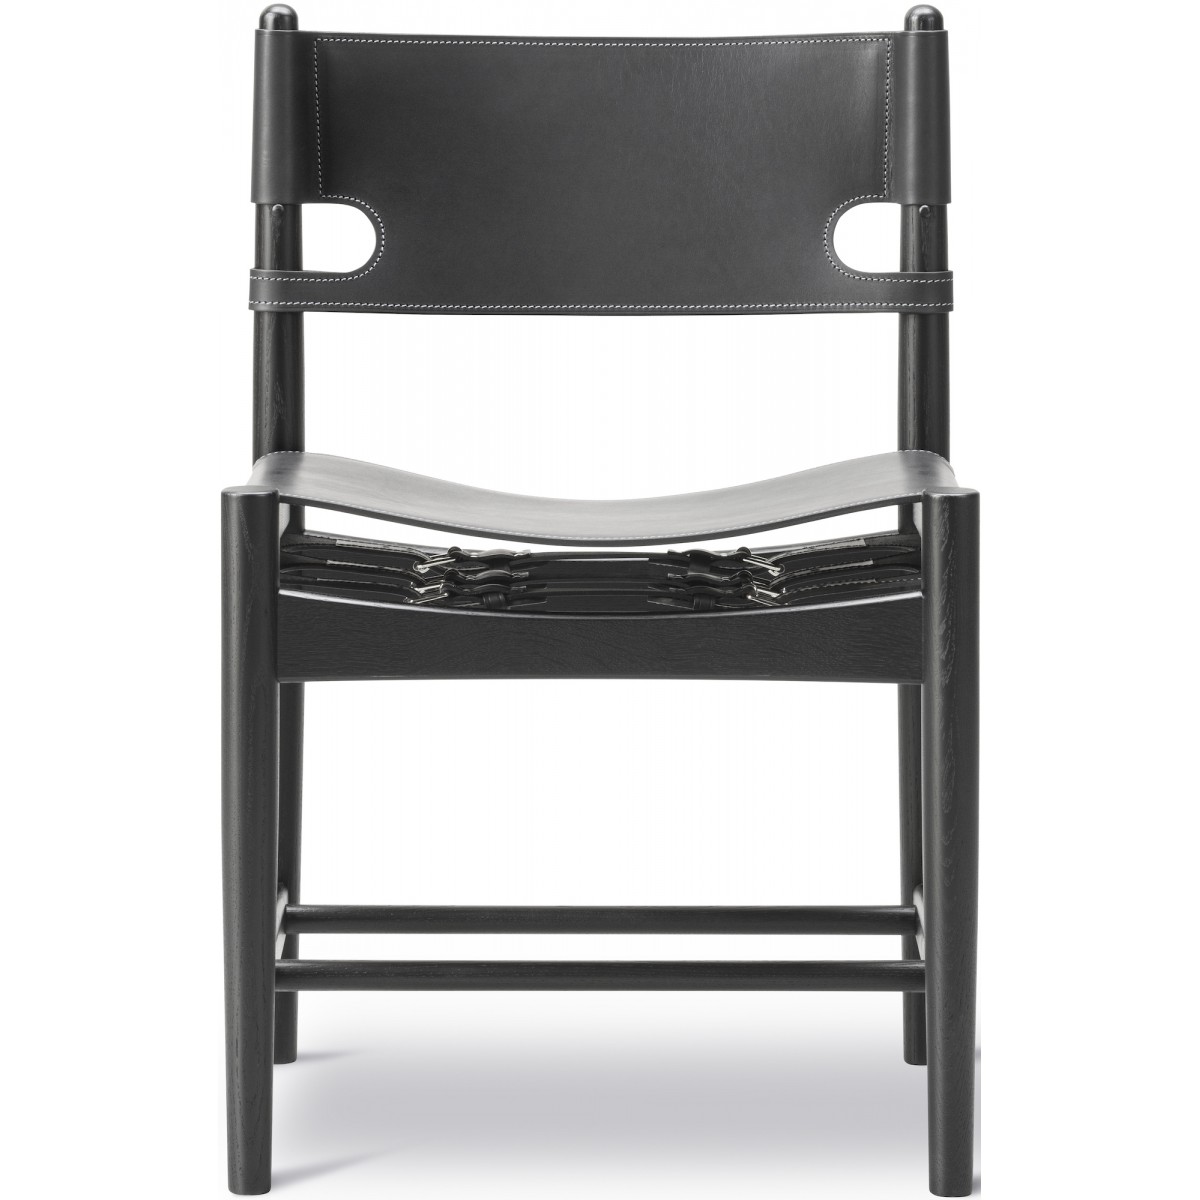 ÉPUISÉ cuir noir / chêne noir vernis - Spanish dining chair 3237